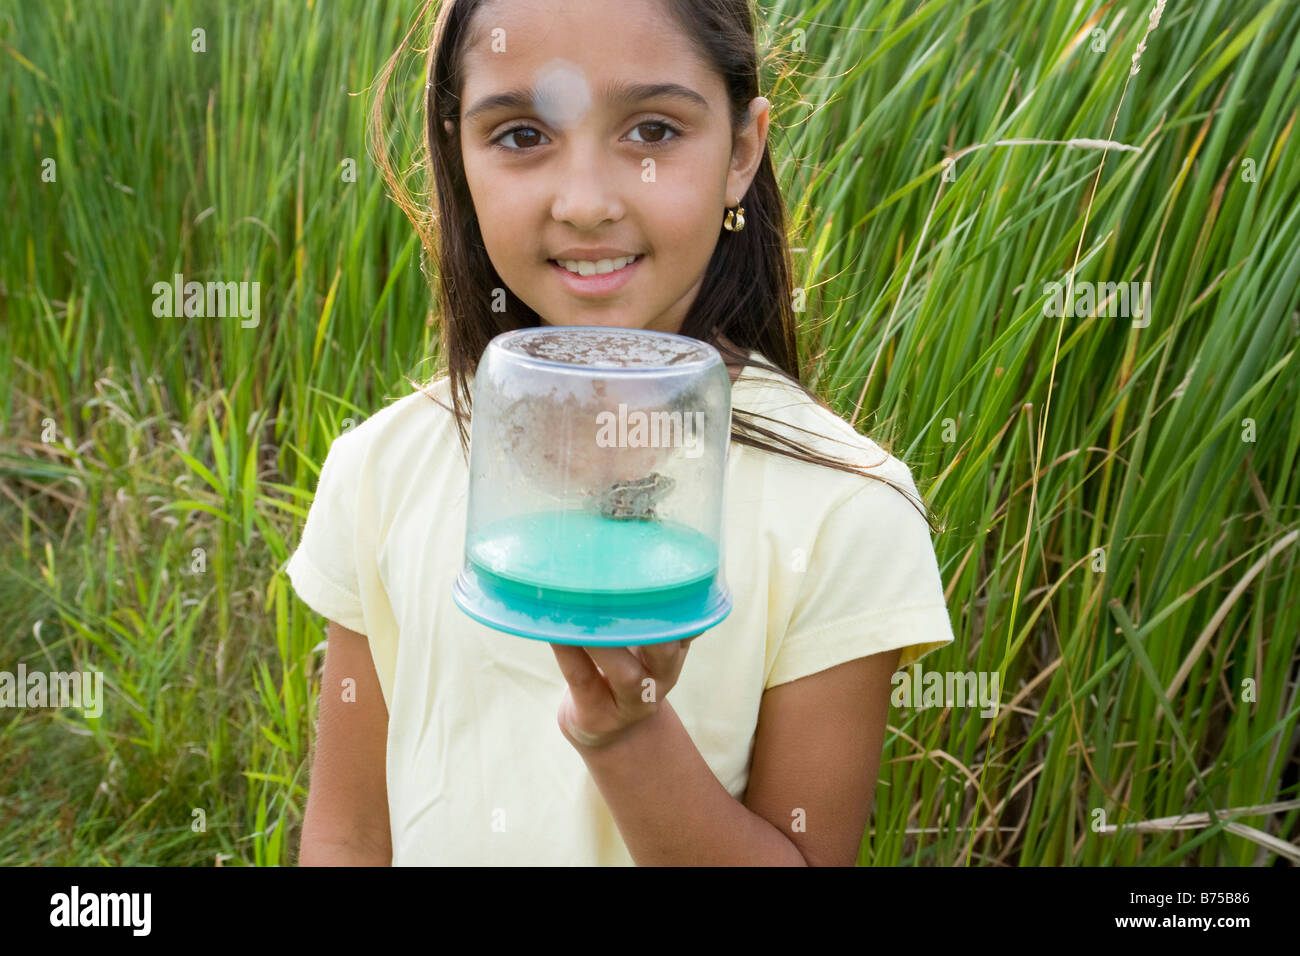 Fille de 8 ans dans des milieux humides holding grenouille dans récipient collecteur, Winnipeg, Canada Banque D'Images